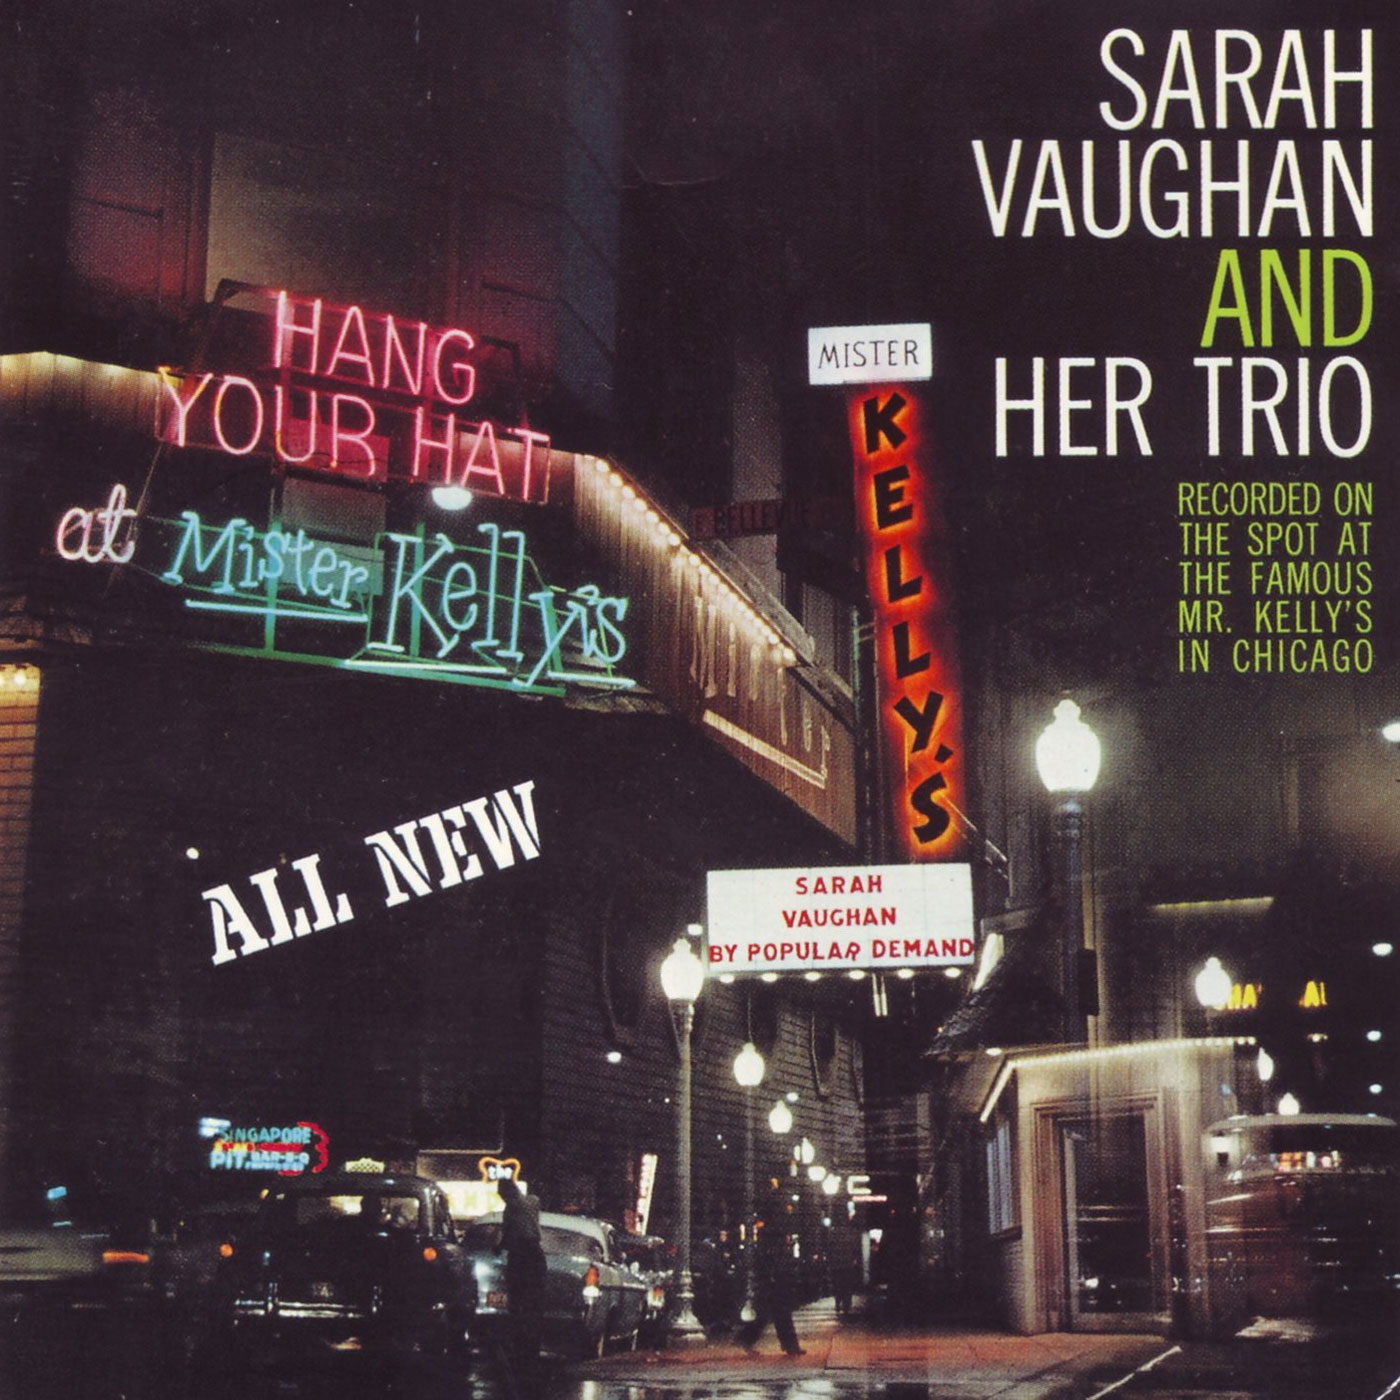 018 Sarah Vaughan – Sarah Vaughan at Mister Kelly’s